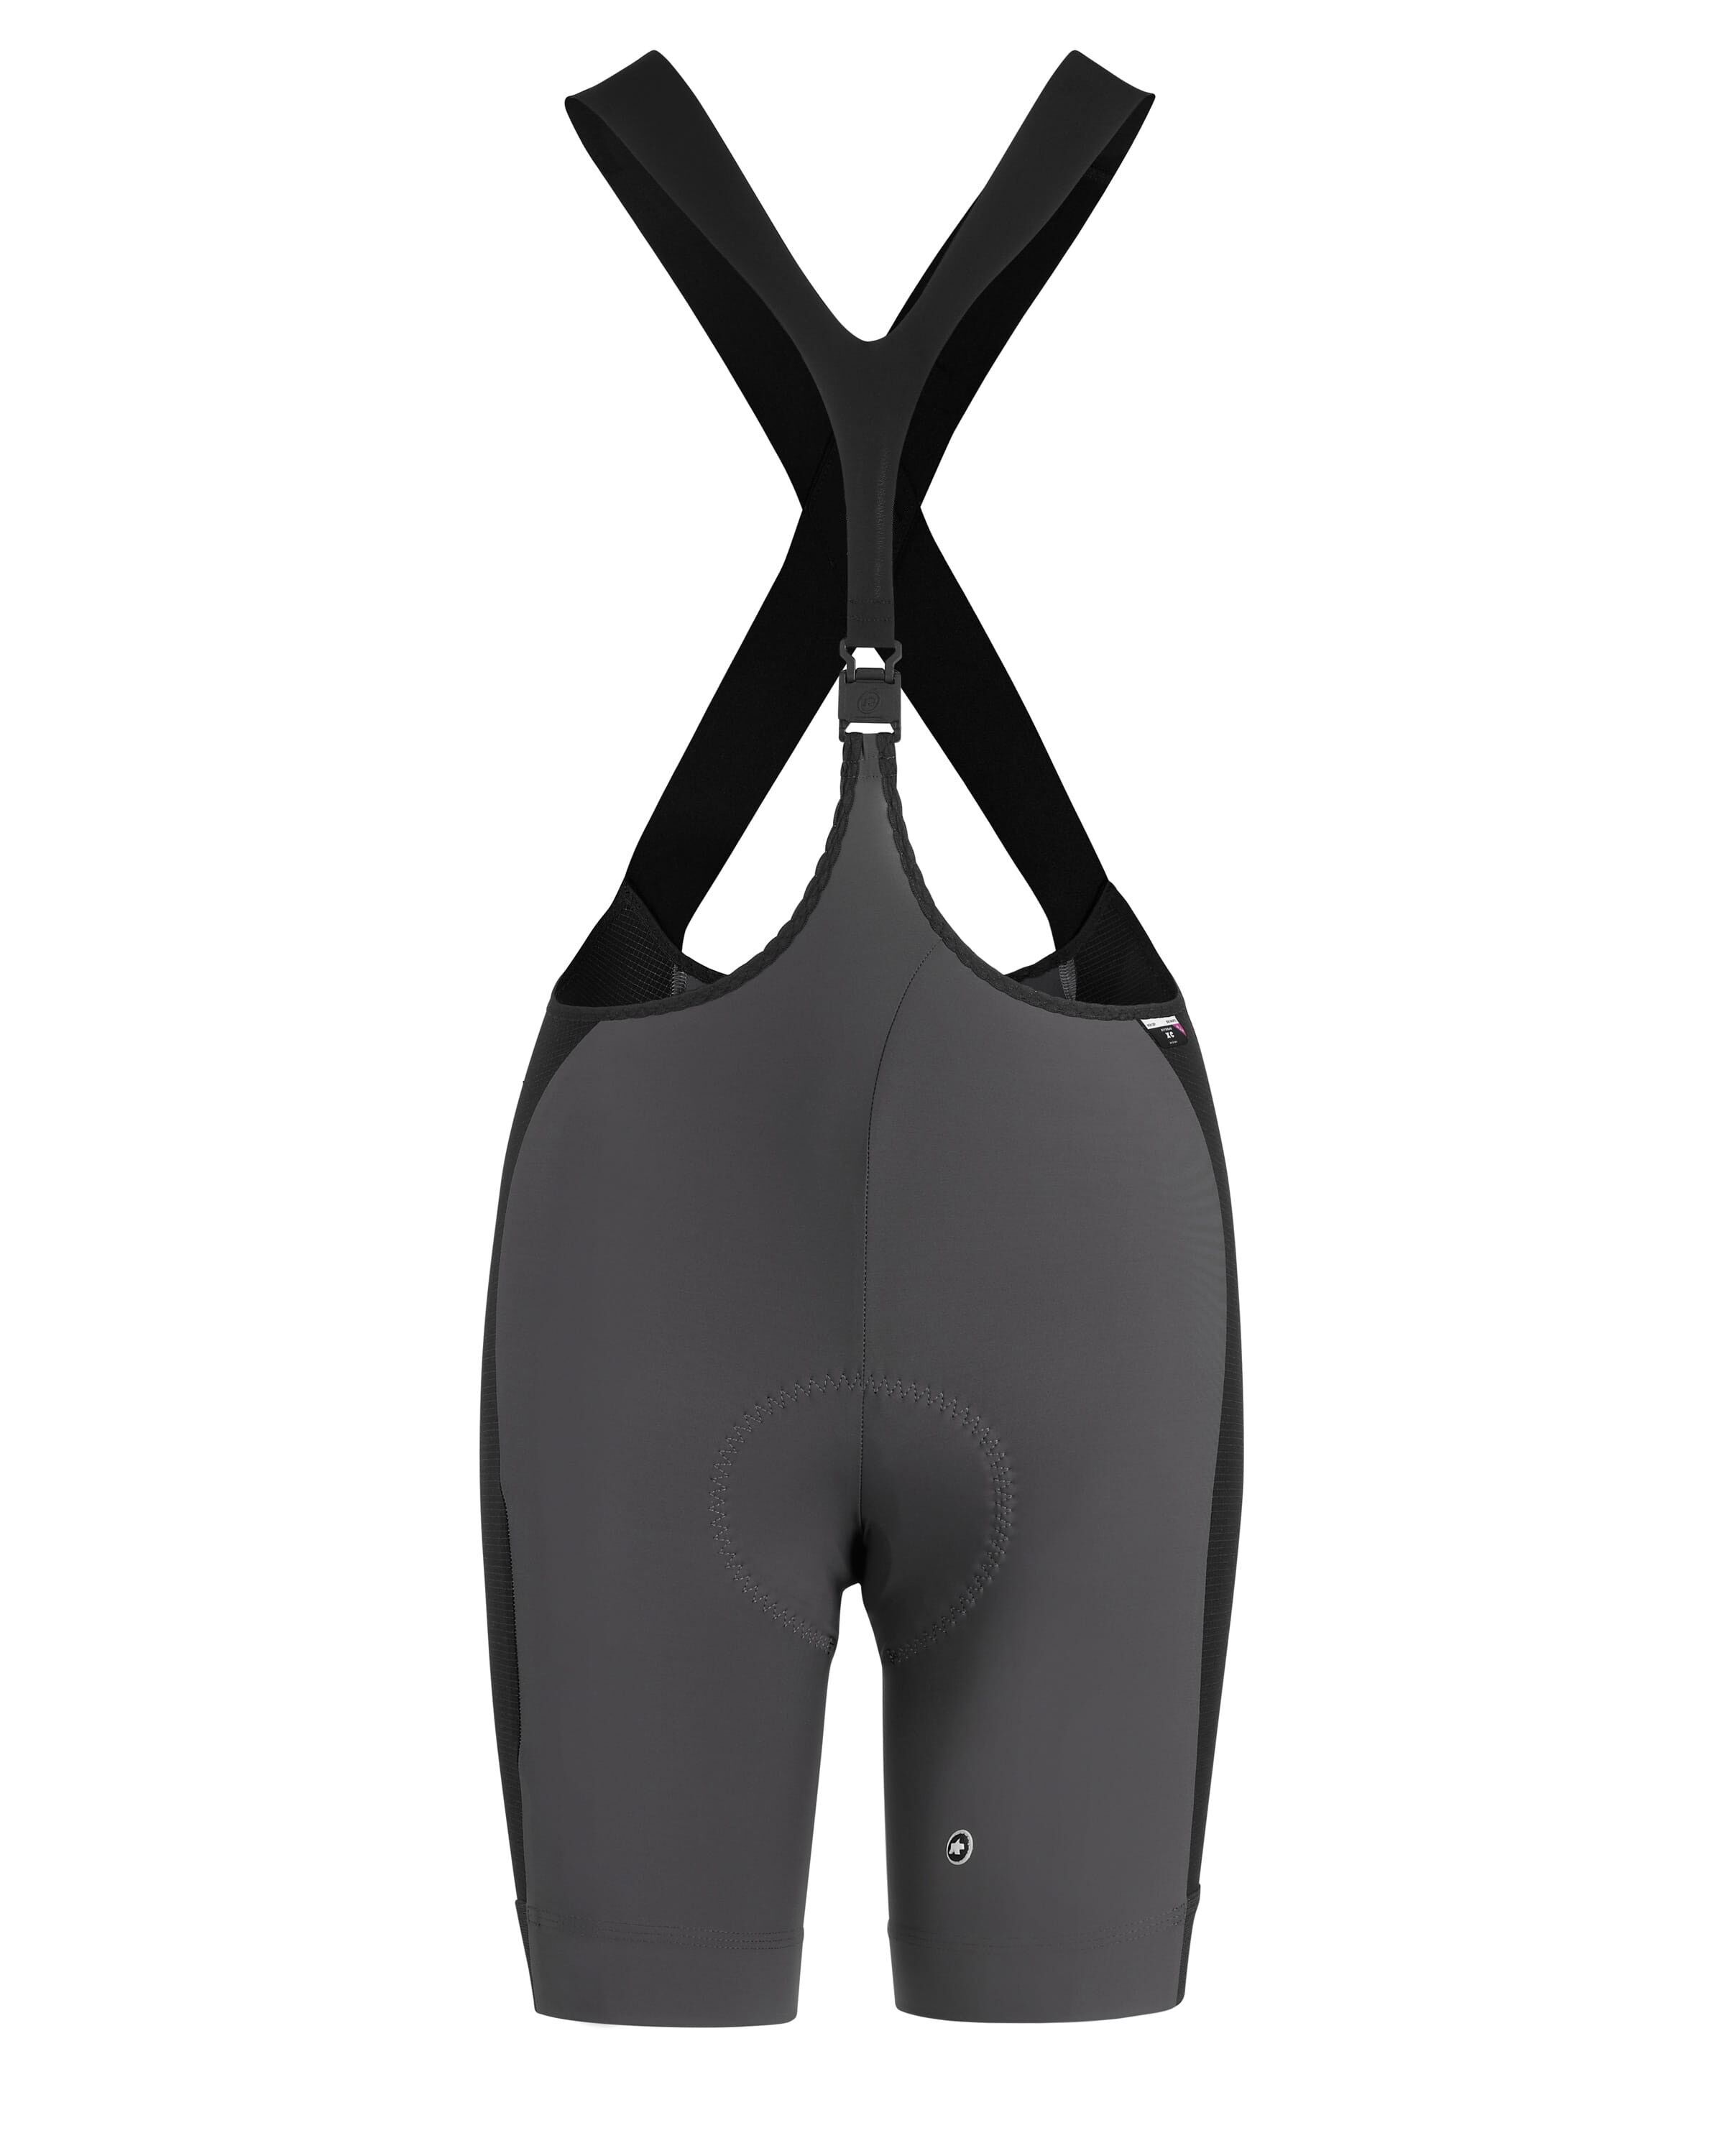 Assos XC Woman Bib Shorts  - MTB bib shorts - Women's